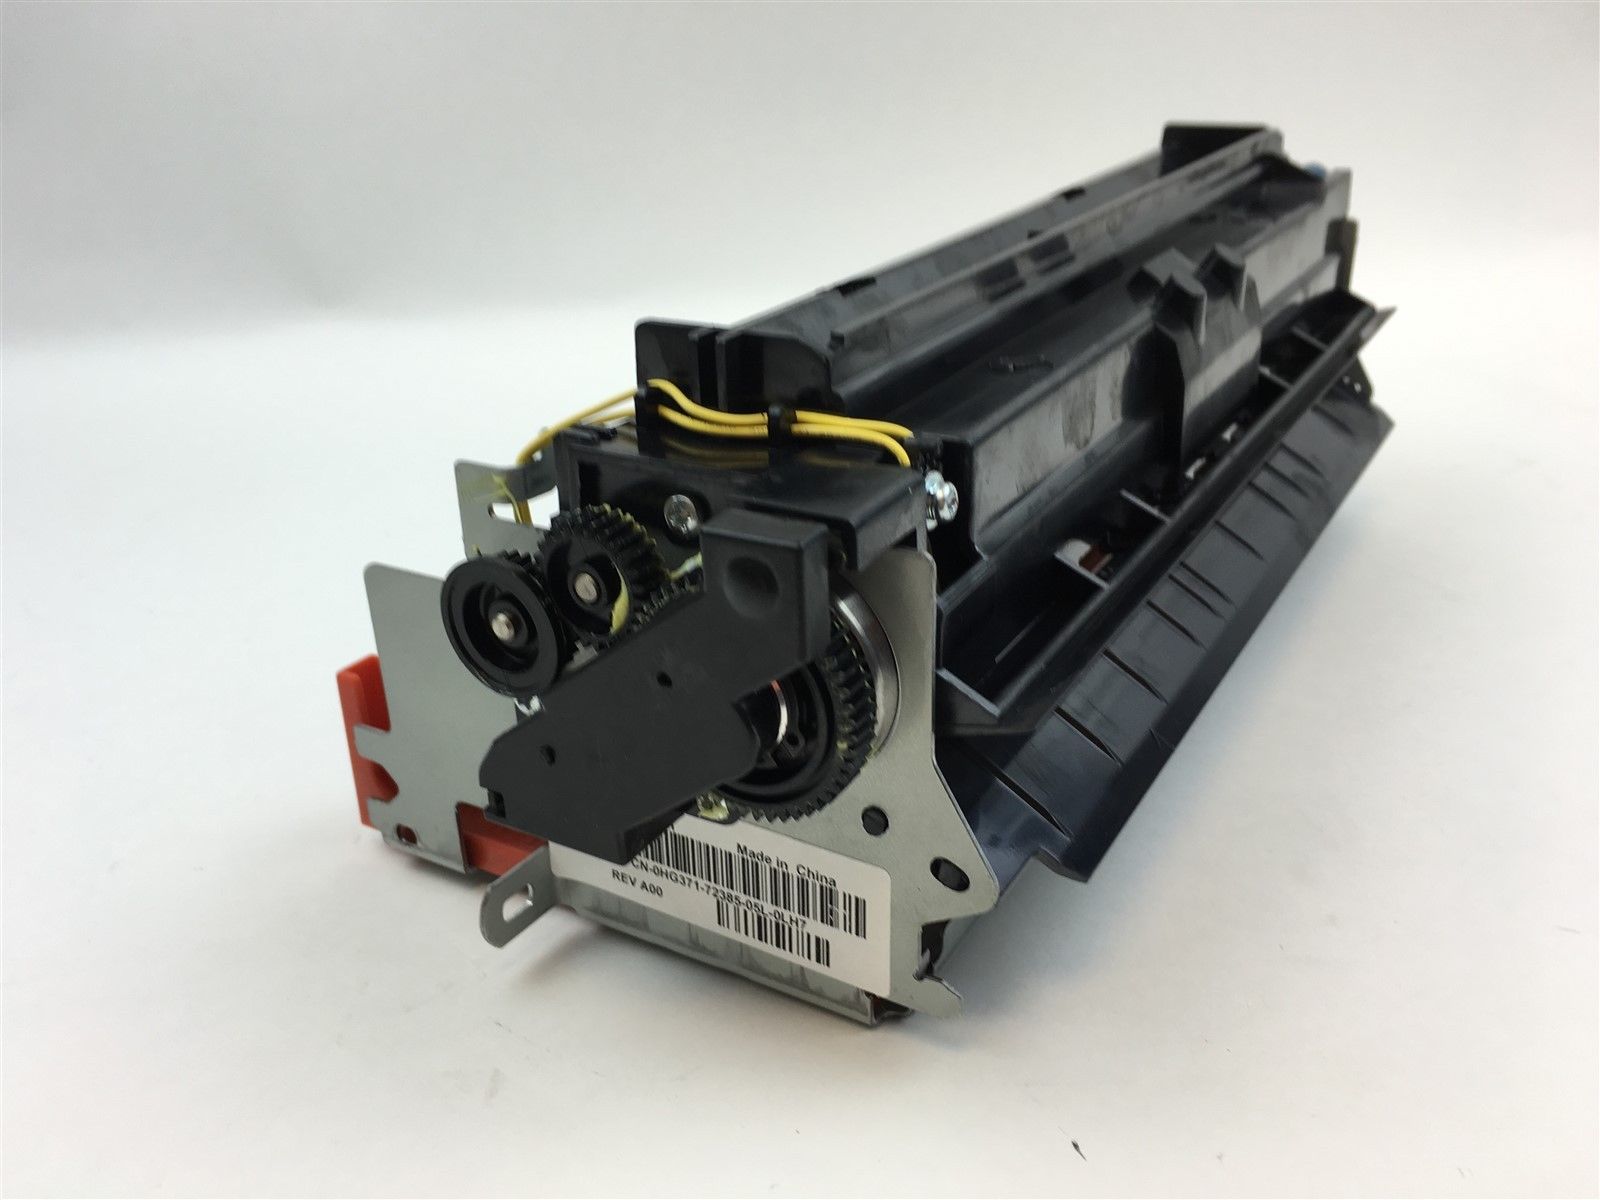 Genuine Dell 5210 Laser Printer Fuser maintenance Kit 220V HG371 0HG371